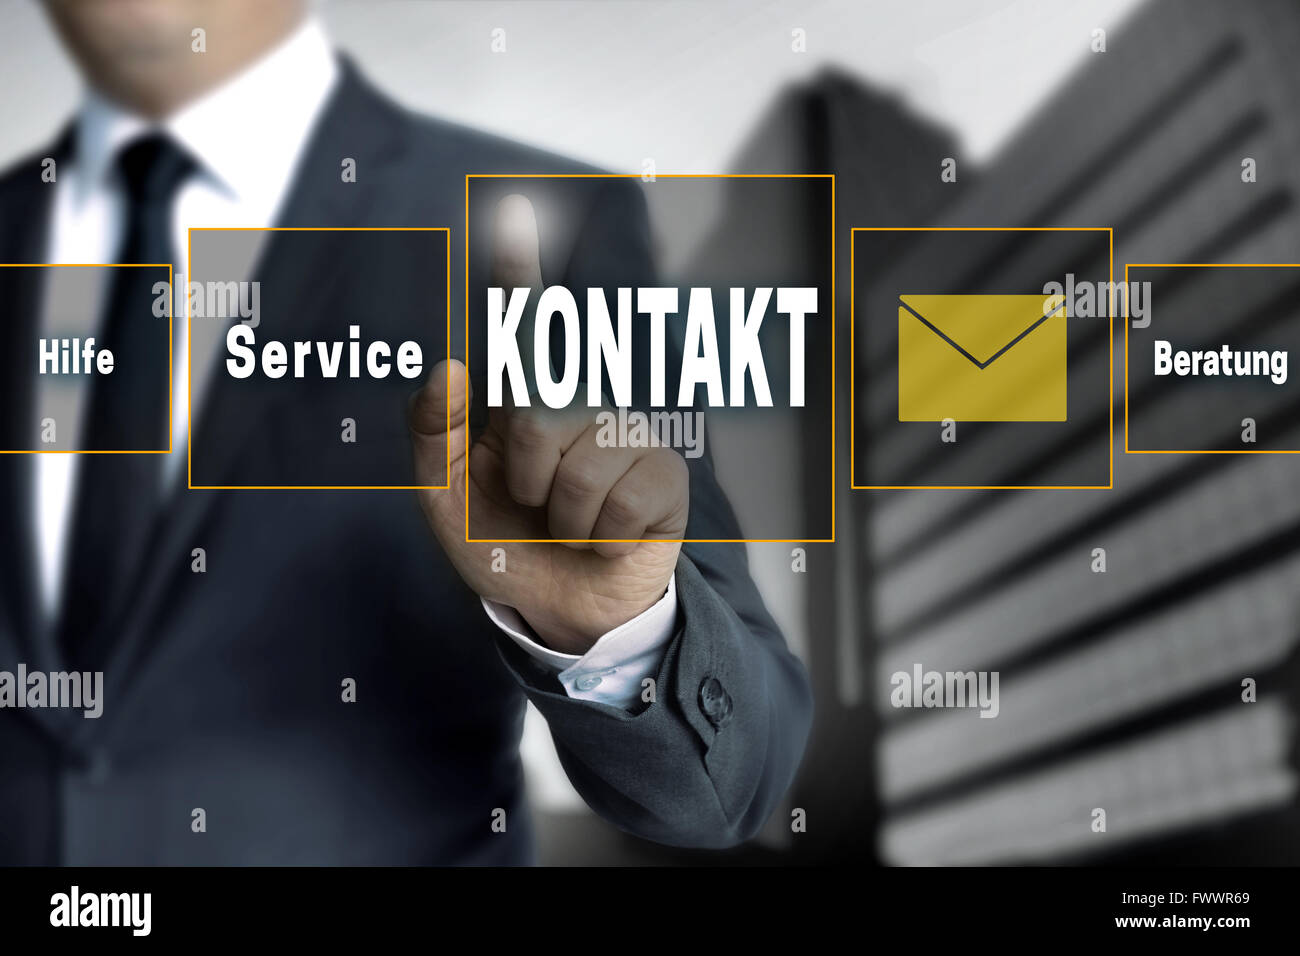 Kontakt, Hilfe, Beratung, service (en idioma alemán contacto, ayuda, asesoría, servicio) Pantalla táctil es operado por el empresario Foto de stock